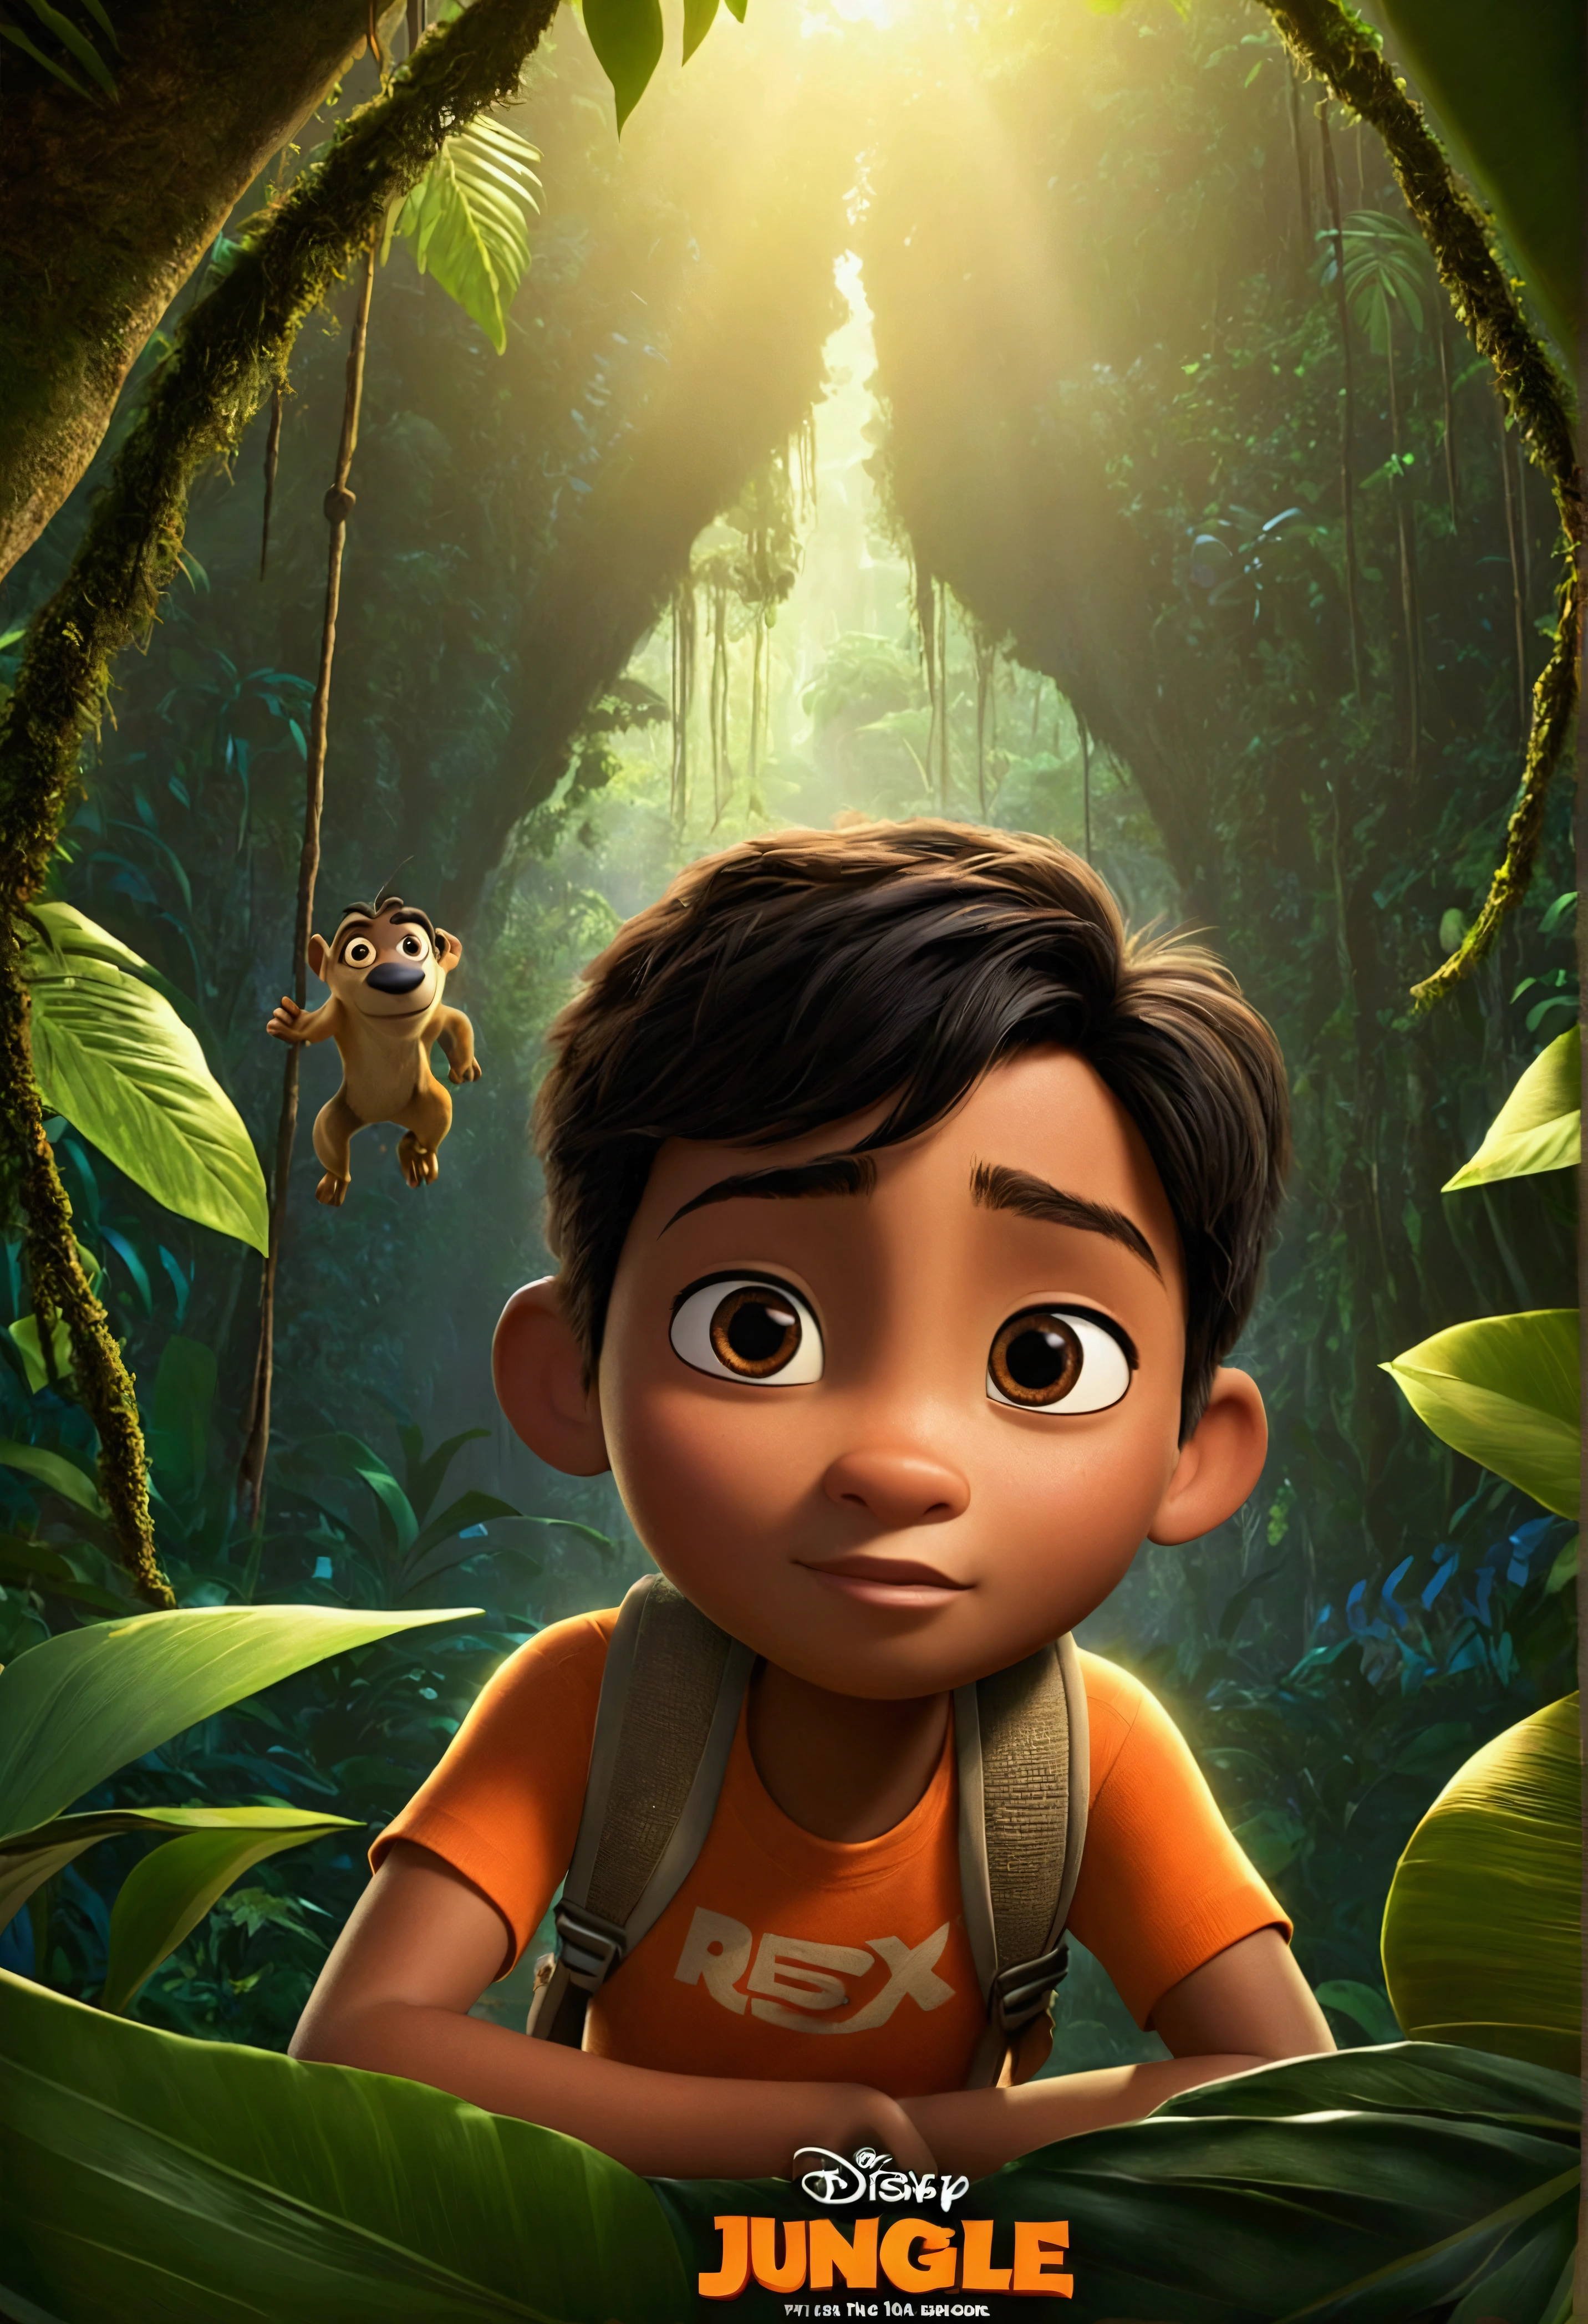 um pôster de filme inspirado na Disney pixar com o título "rescue in the jungle". The character has light brown skin, short black hair, eyes browns, na animação Disney pixar Disney Cartoon, pixar, ..3d, Disney